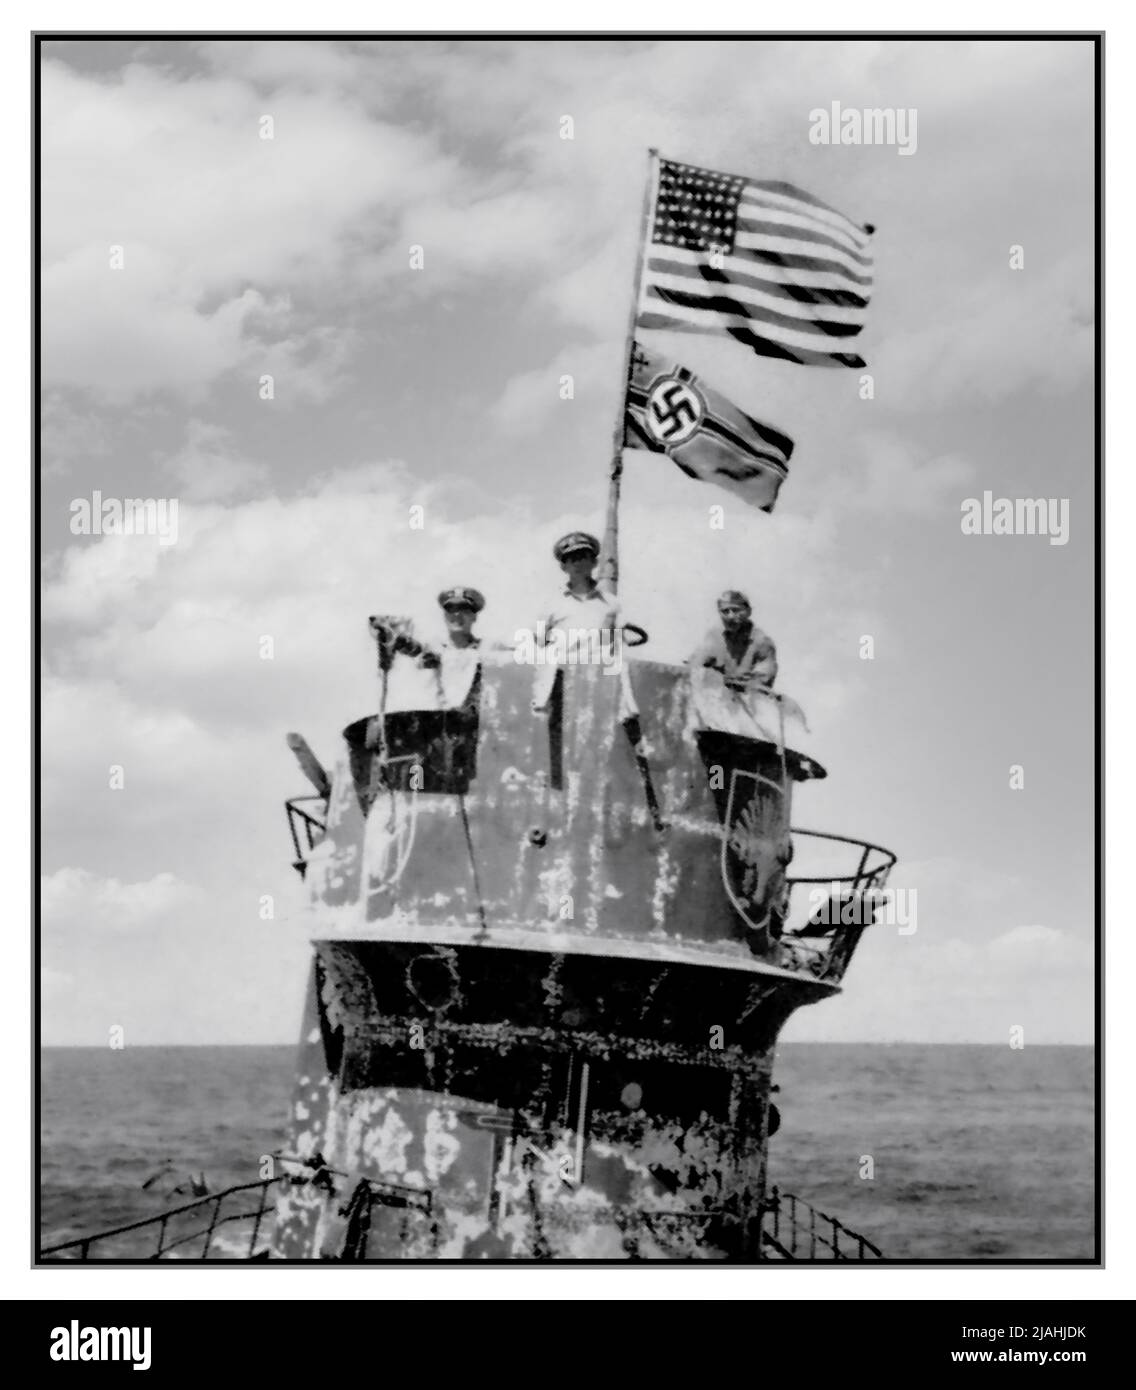 U-BOAT NAZISTA USA ufficiali navali sulla torre di conning del sottomarino nazista tedesco catturato U-505 il 4 giugno 1944. Gli ufficiali sono, da destra a sinistra: Comandante Earl Trosino, USNR; capitano Daniel V. Gallery, Jr., USN, comandante, USS Guadalcanal (CVE-60); E il tenente Junior Grade Albert L. David, USN, che è stato postumamente insignito della Medaglia d'onore per la guida del partito d'imbarco che ha catturato il sottomarino e ha effettuato operazioni di salvataggio. Nota la bandiera degli Stati Uniti che vola sopra l'insegna della marina tedesca Kreigsmarine. U-505 fu la prima nave da guerra nemica catturata in alto mare. Foto Stock